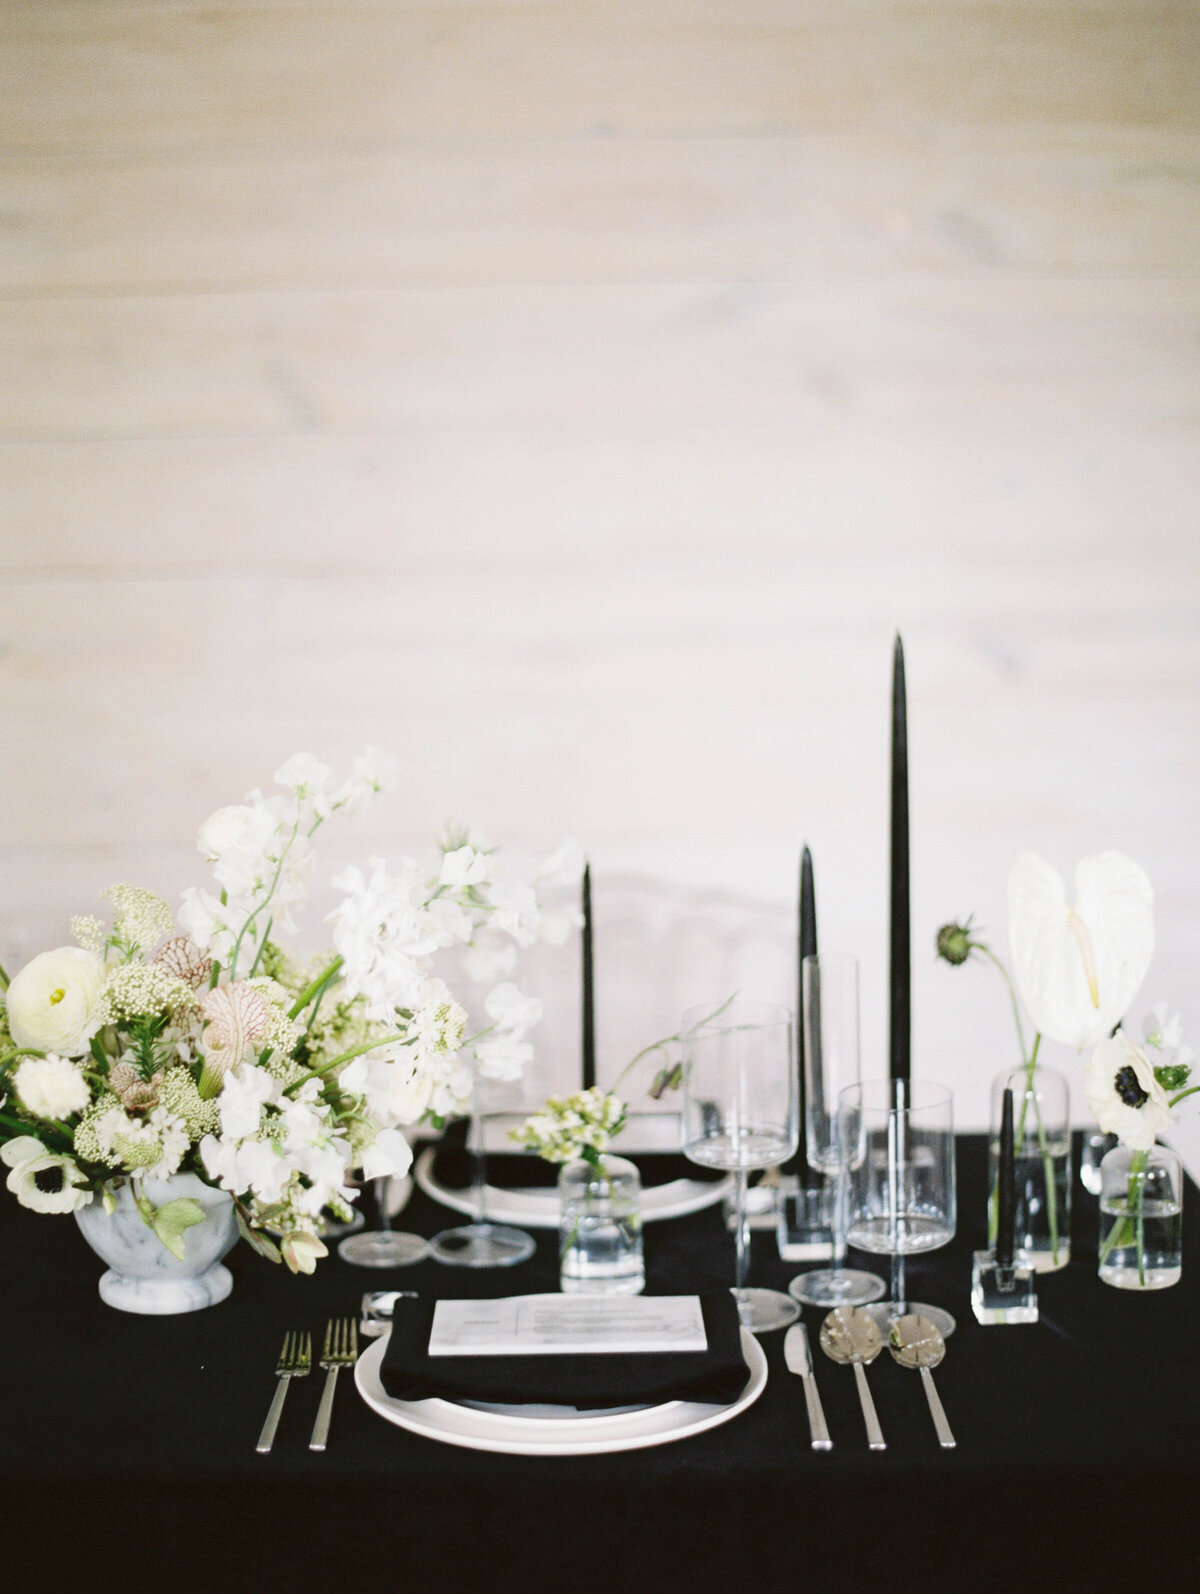 max-owens-design-black-white-modern-wedding-10-reception-centerpiece